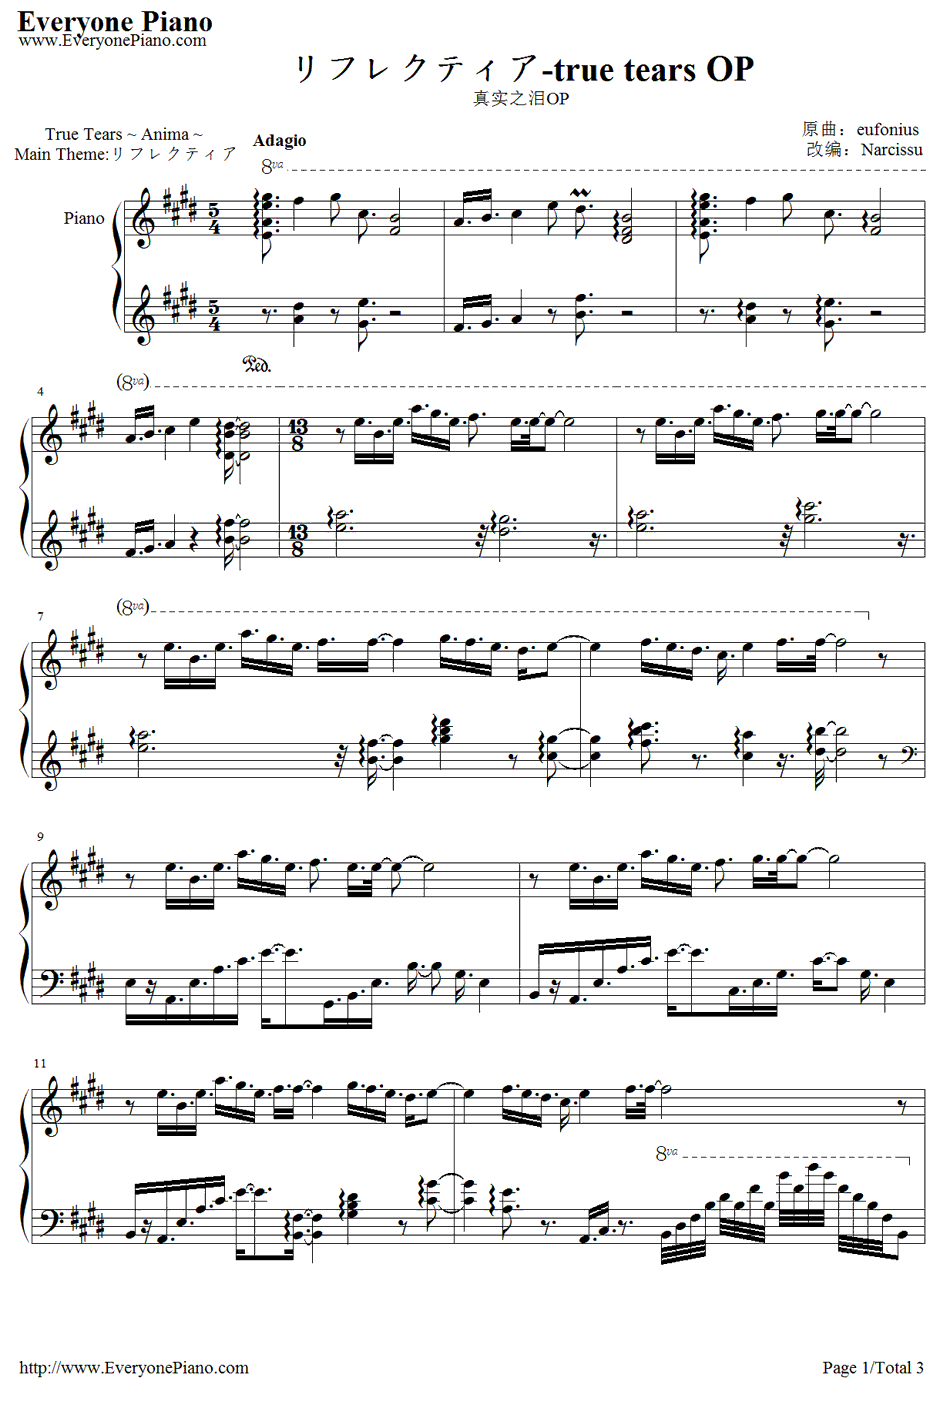 リフレクティア钢琴谱-eufonius-真实之泪OP1